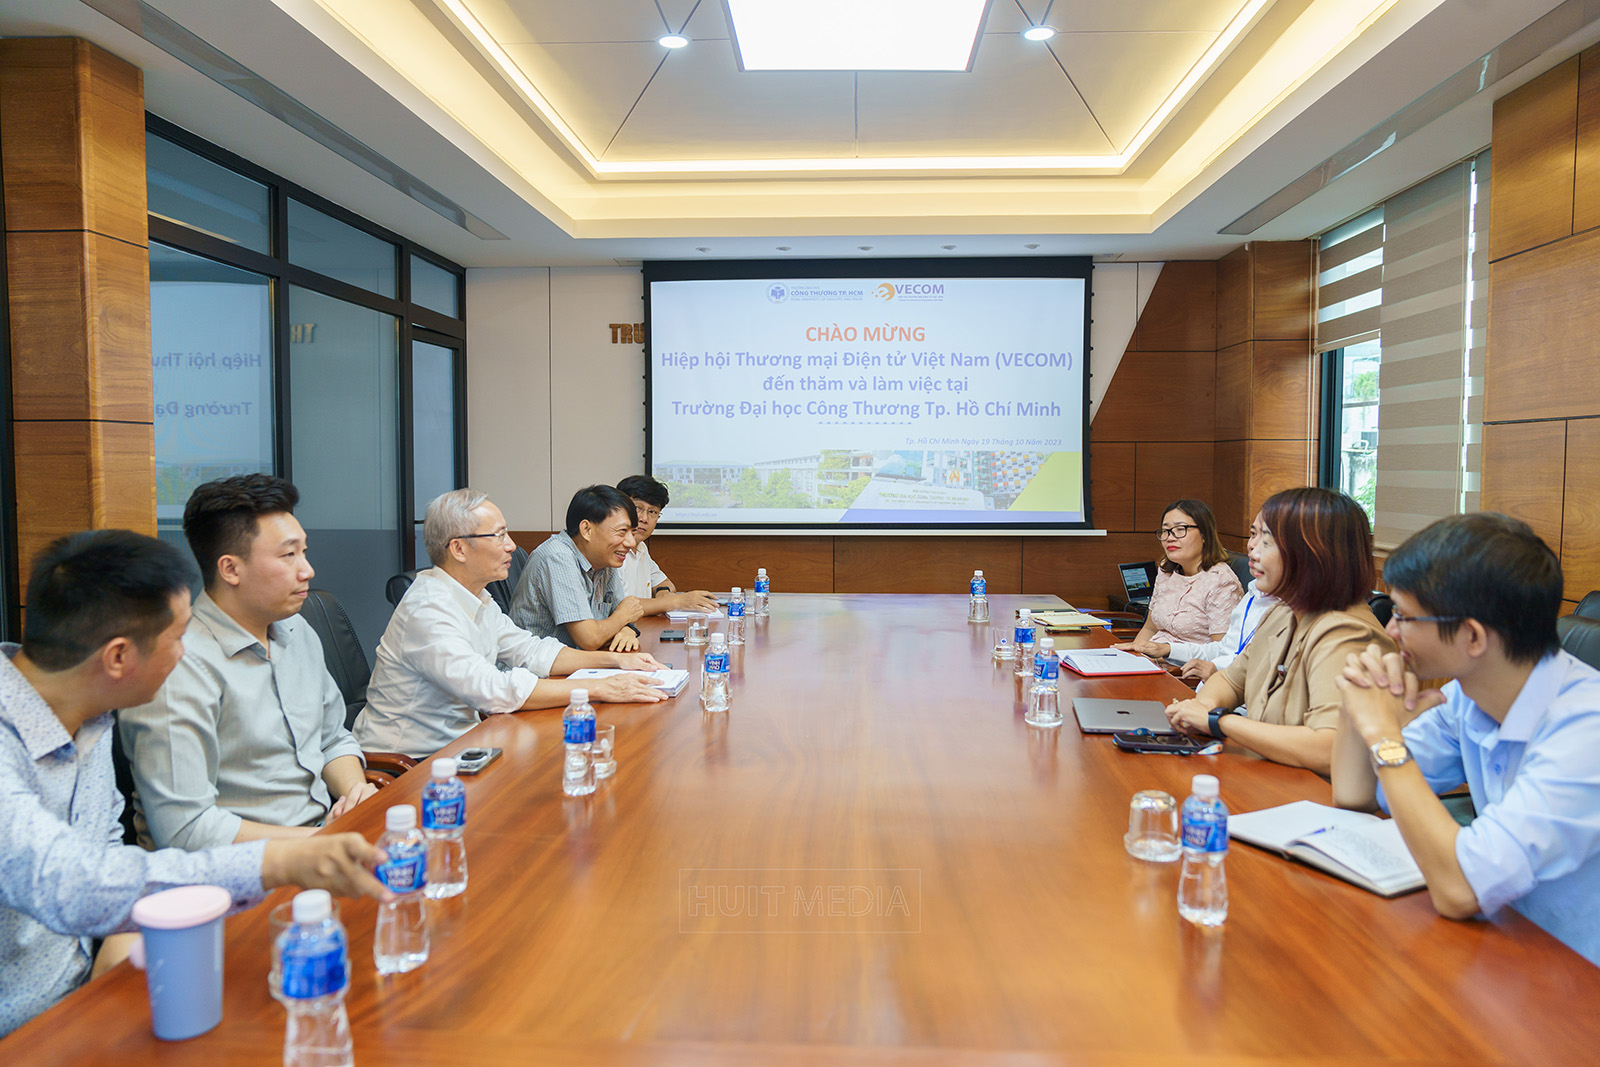 Trường Đại học Công Thương TP.HCM thắt chặt hợp tác với Hiệp hội Thương mại điện tử Việt Nam